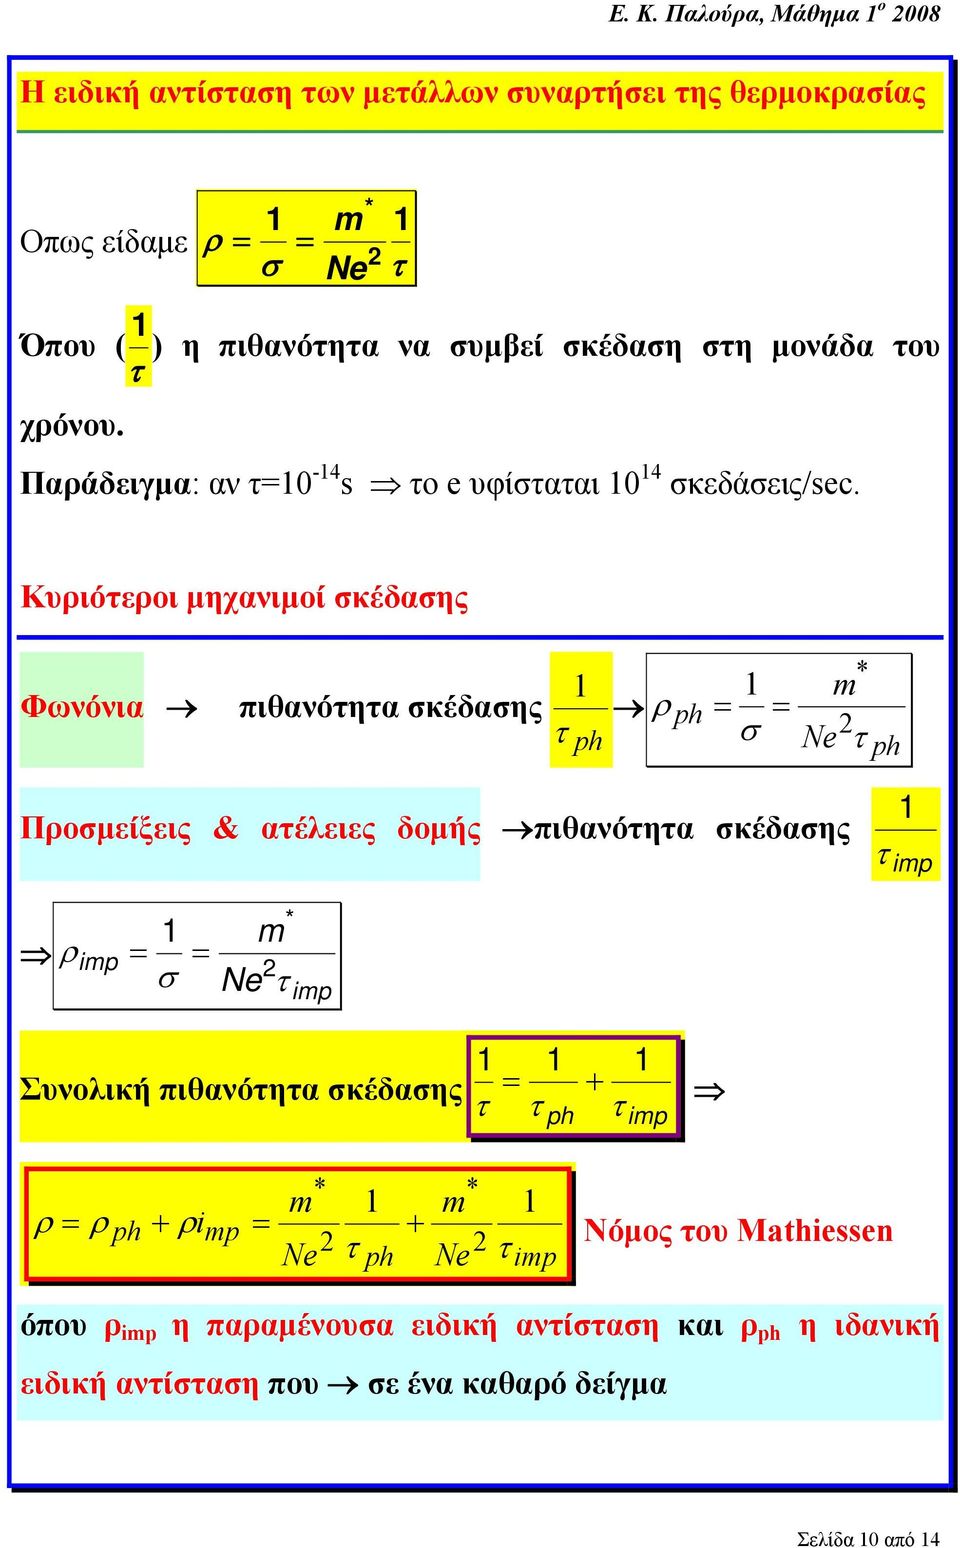 Κυριότεροι μηχανιμοί σκέδασης Φωνόνια πιθανότητα σκέδασης ρ = 1 = 1 ph τ ph σ Ne τ ph Προσμείξεις & ατέλειες δομής πιθανότητα σκέδασης 1 τ ip ρ ip 1 = =